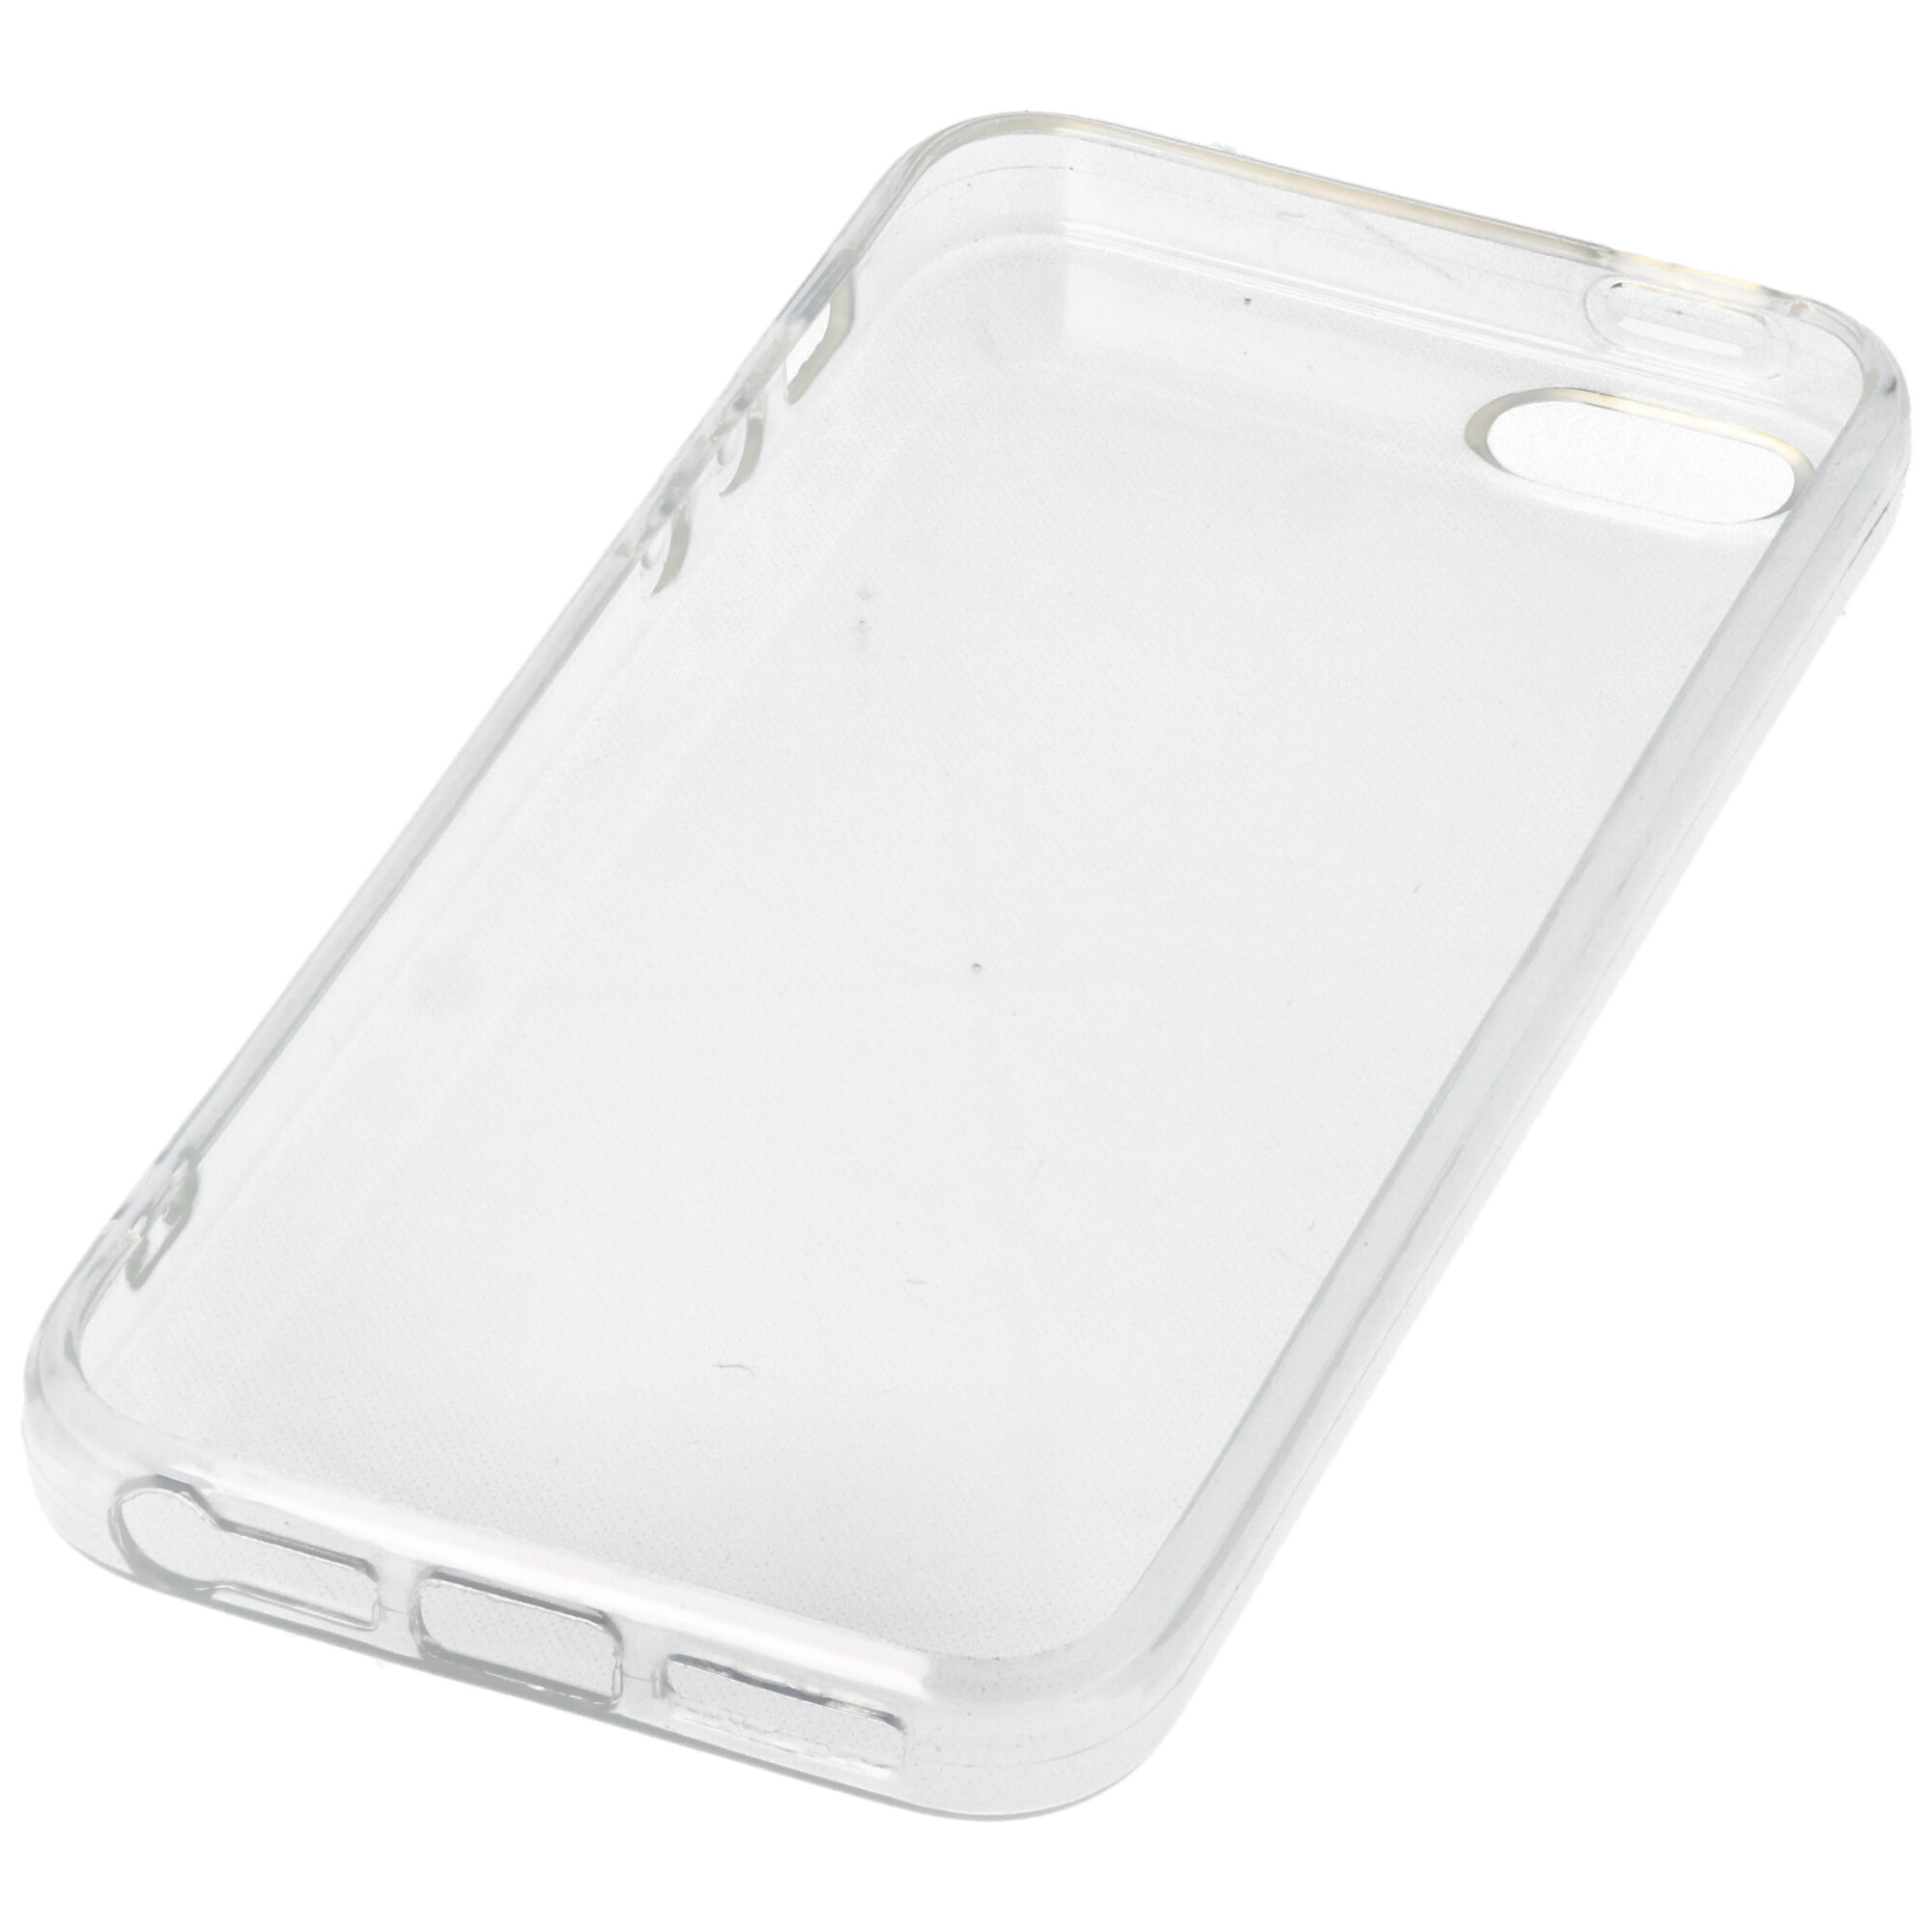 Hülle passend für Apple iPhone 5 - transparente Schutzhülle, Anti-Gelb Luftkissen Fallschutz Silikon Handyhülle robustes TPU Case